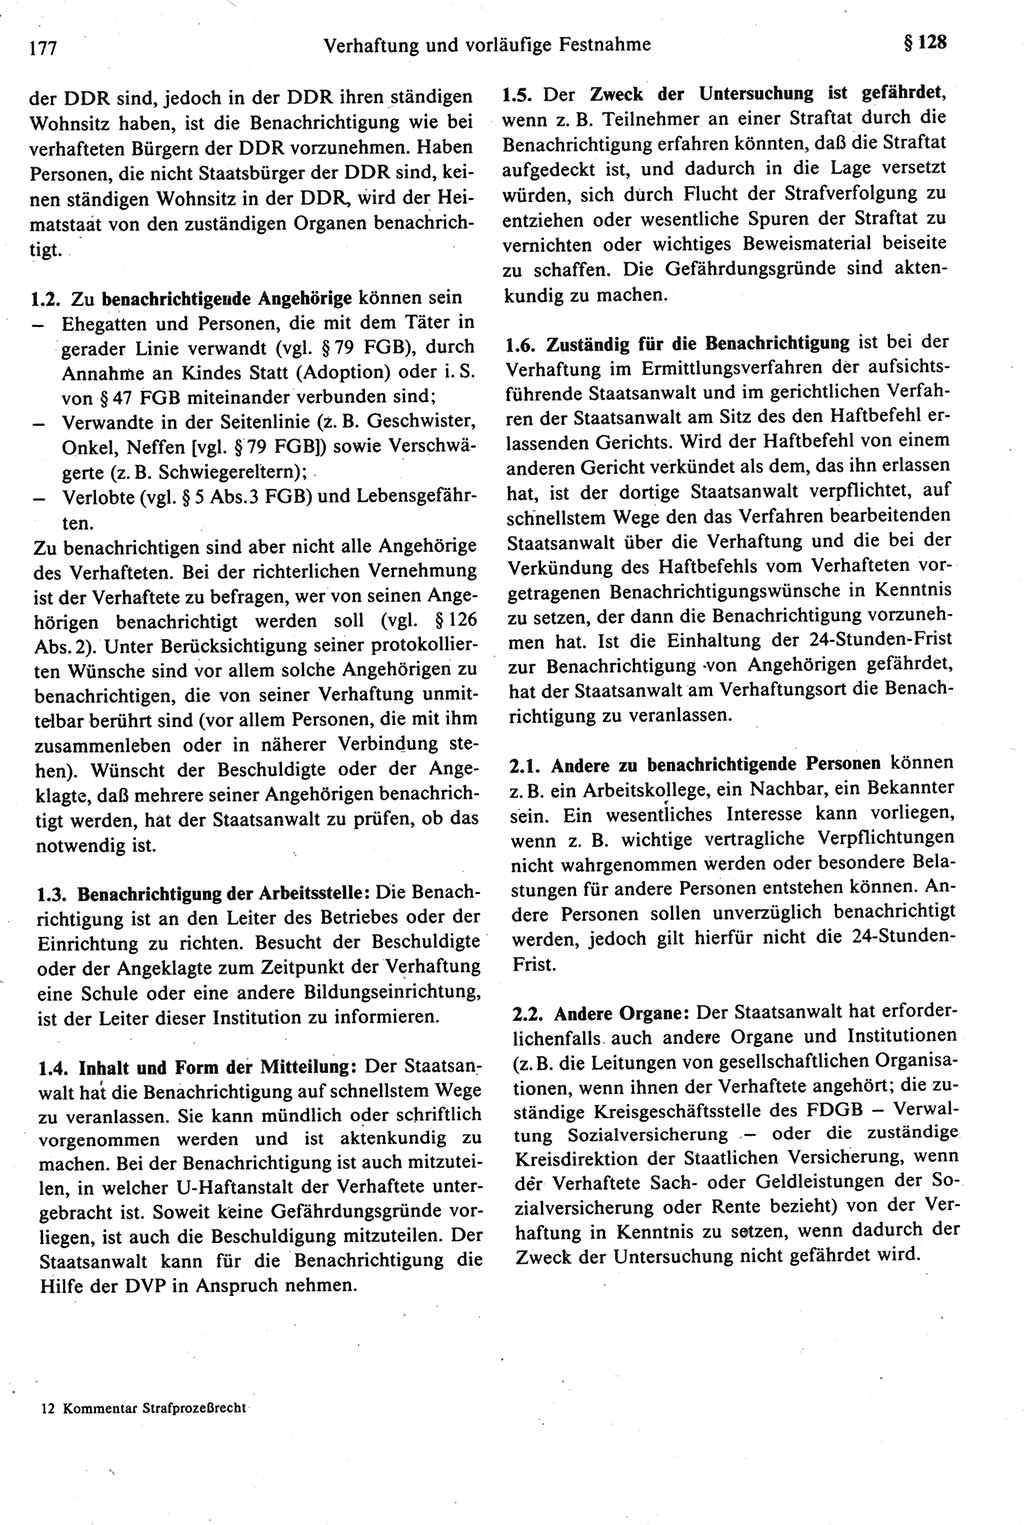 Strafprozeßrecht der DDR [Deutsche Demokratische Republik], Kommentar zur Strafprozeßordnung (StPO) 1987, Seite 177 (Strafprozeßr. DDR Komm. StPO 1987, S. 177)